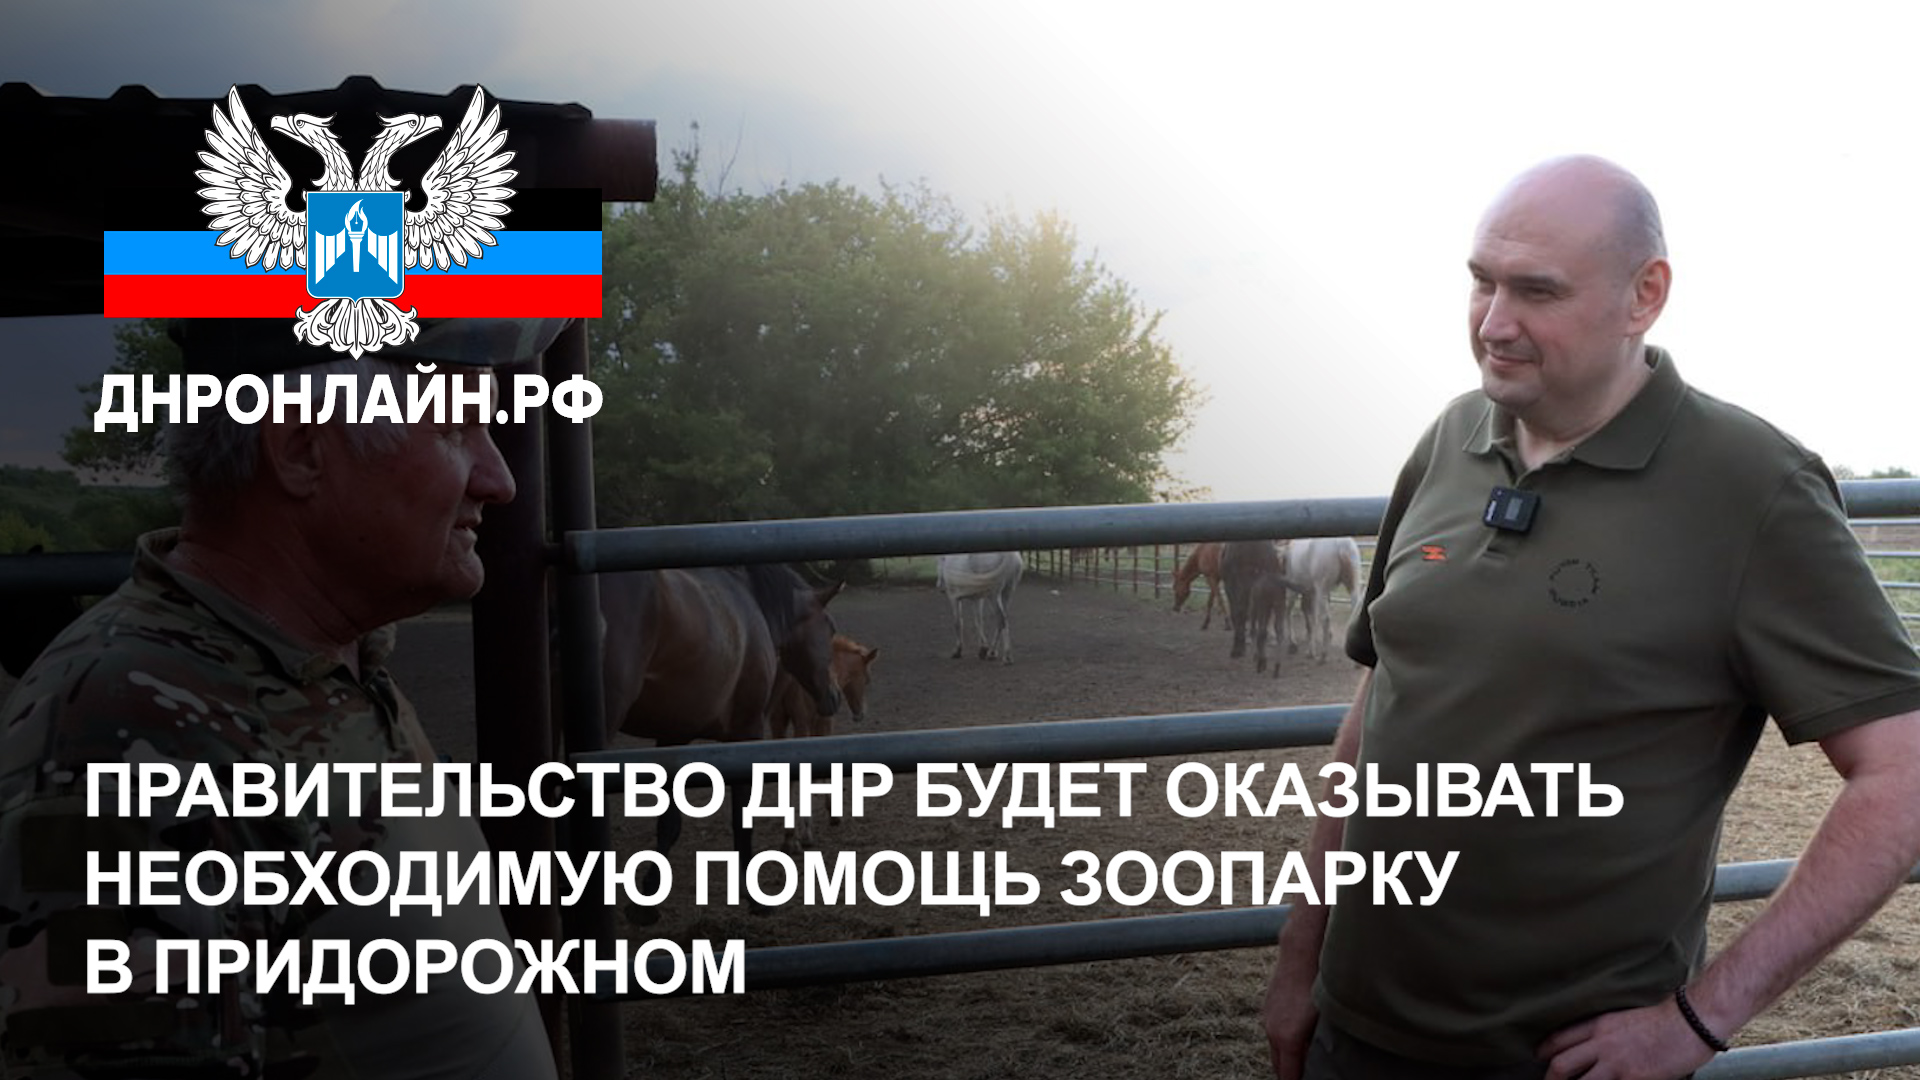 Правительство ДНР будет оказывать необходимую помощь зоопарку в Придорожном